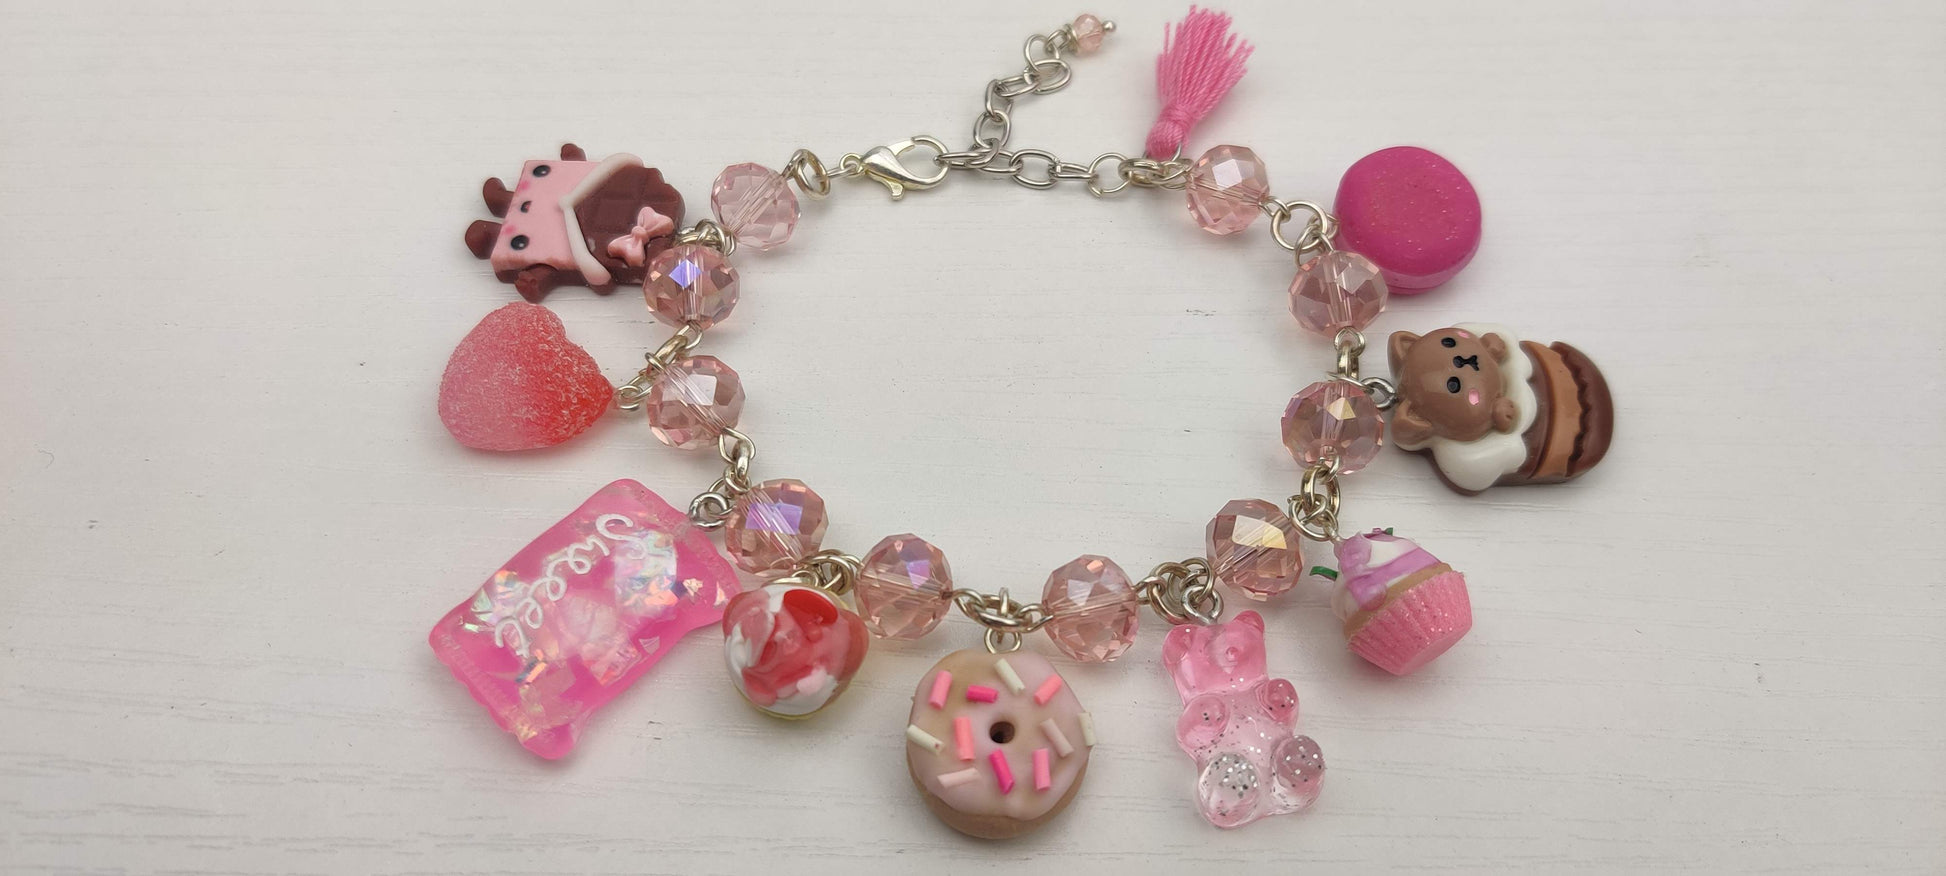 Pink Kawaii Candy Charm Bracelet